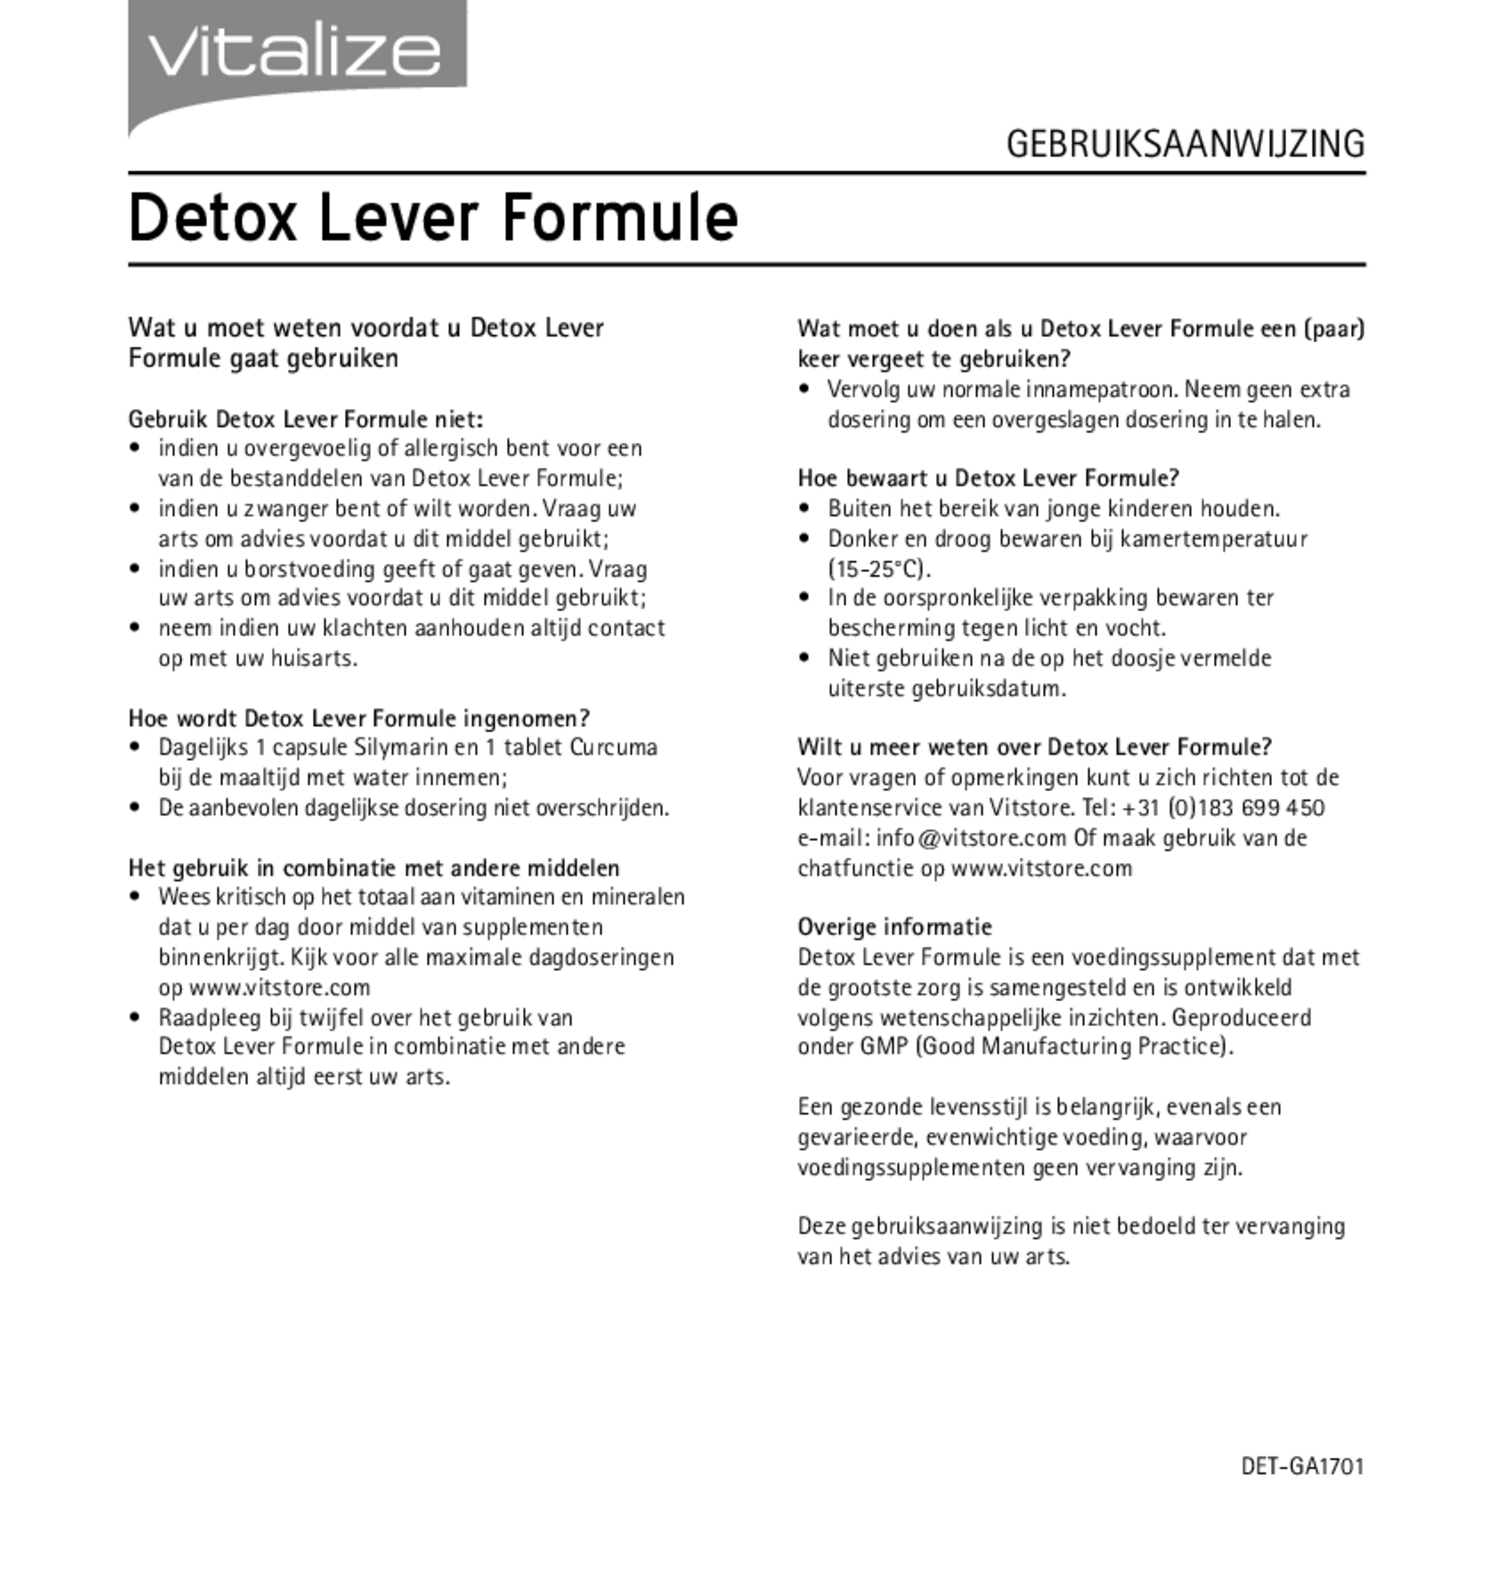 Detox Lever Formule 20 Capsules + 20 Tabletten afbeelding van document #2, gebruiksaanwijzing